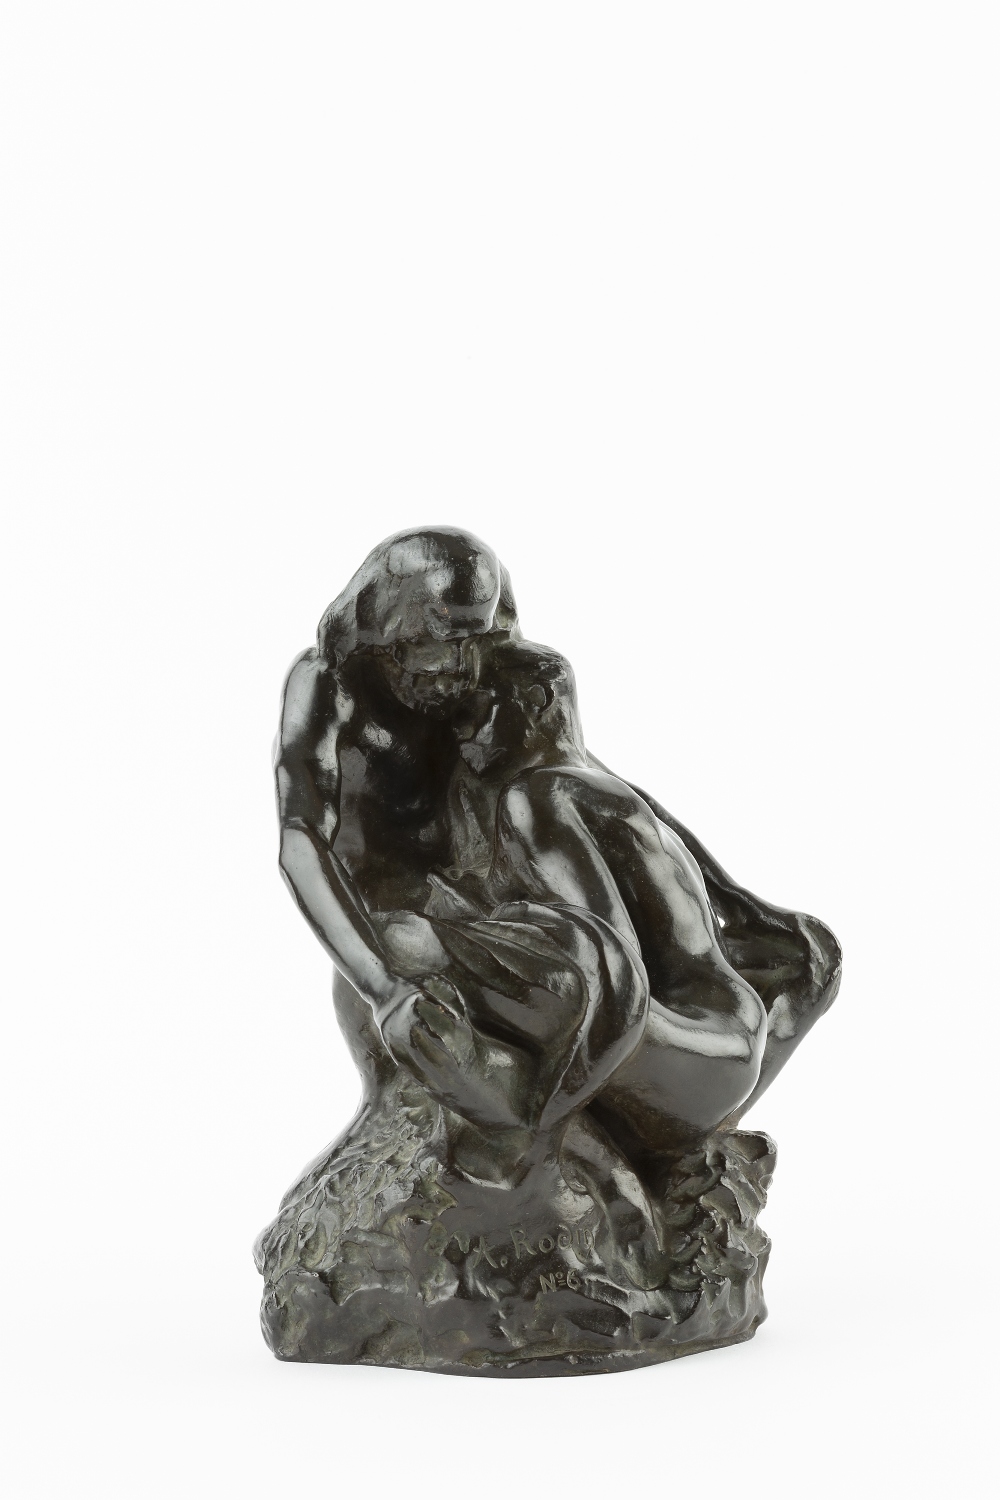 Lot 632 - Auguste Rodin (1840-1917)